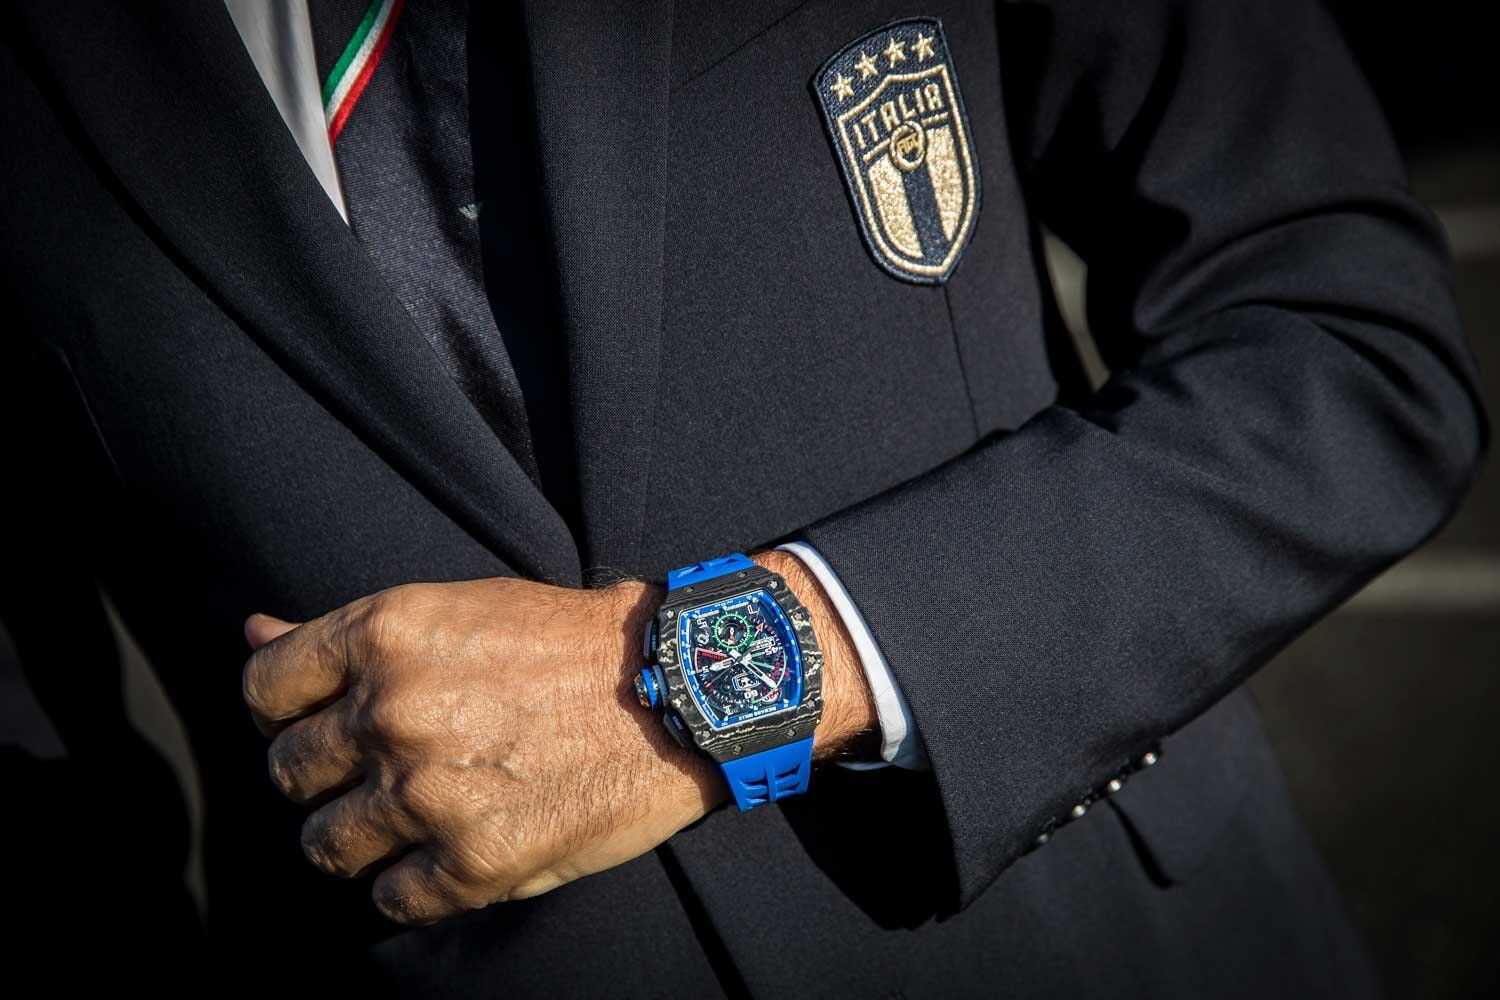 Bóc giá chiếc đồng hồ mang tên HLV trưởng tuyển Italia Roberto Mancini-5